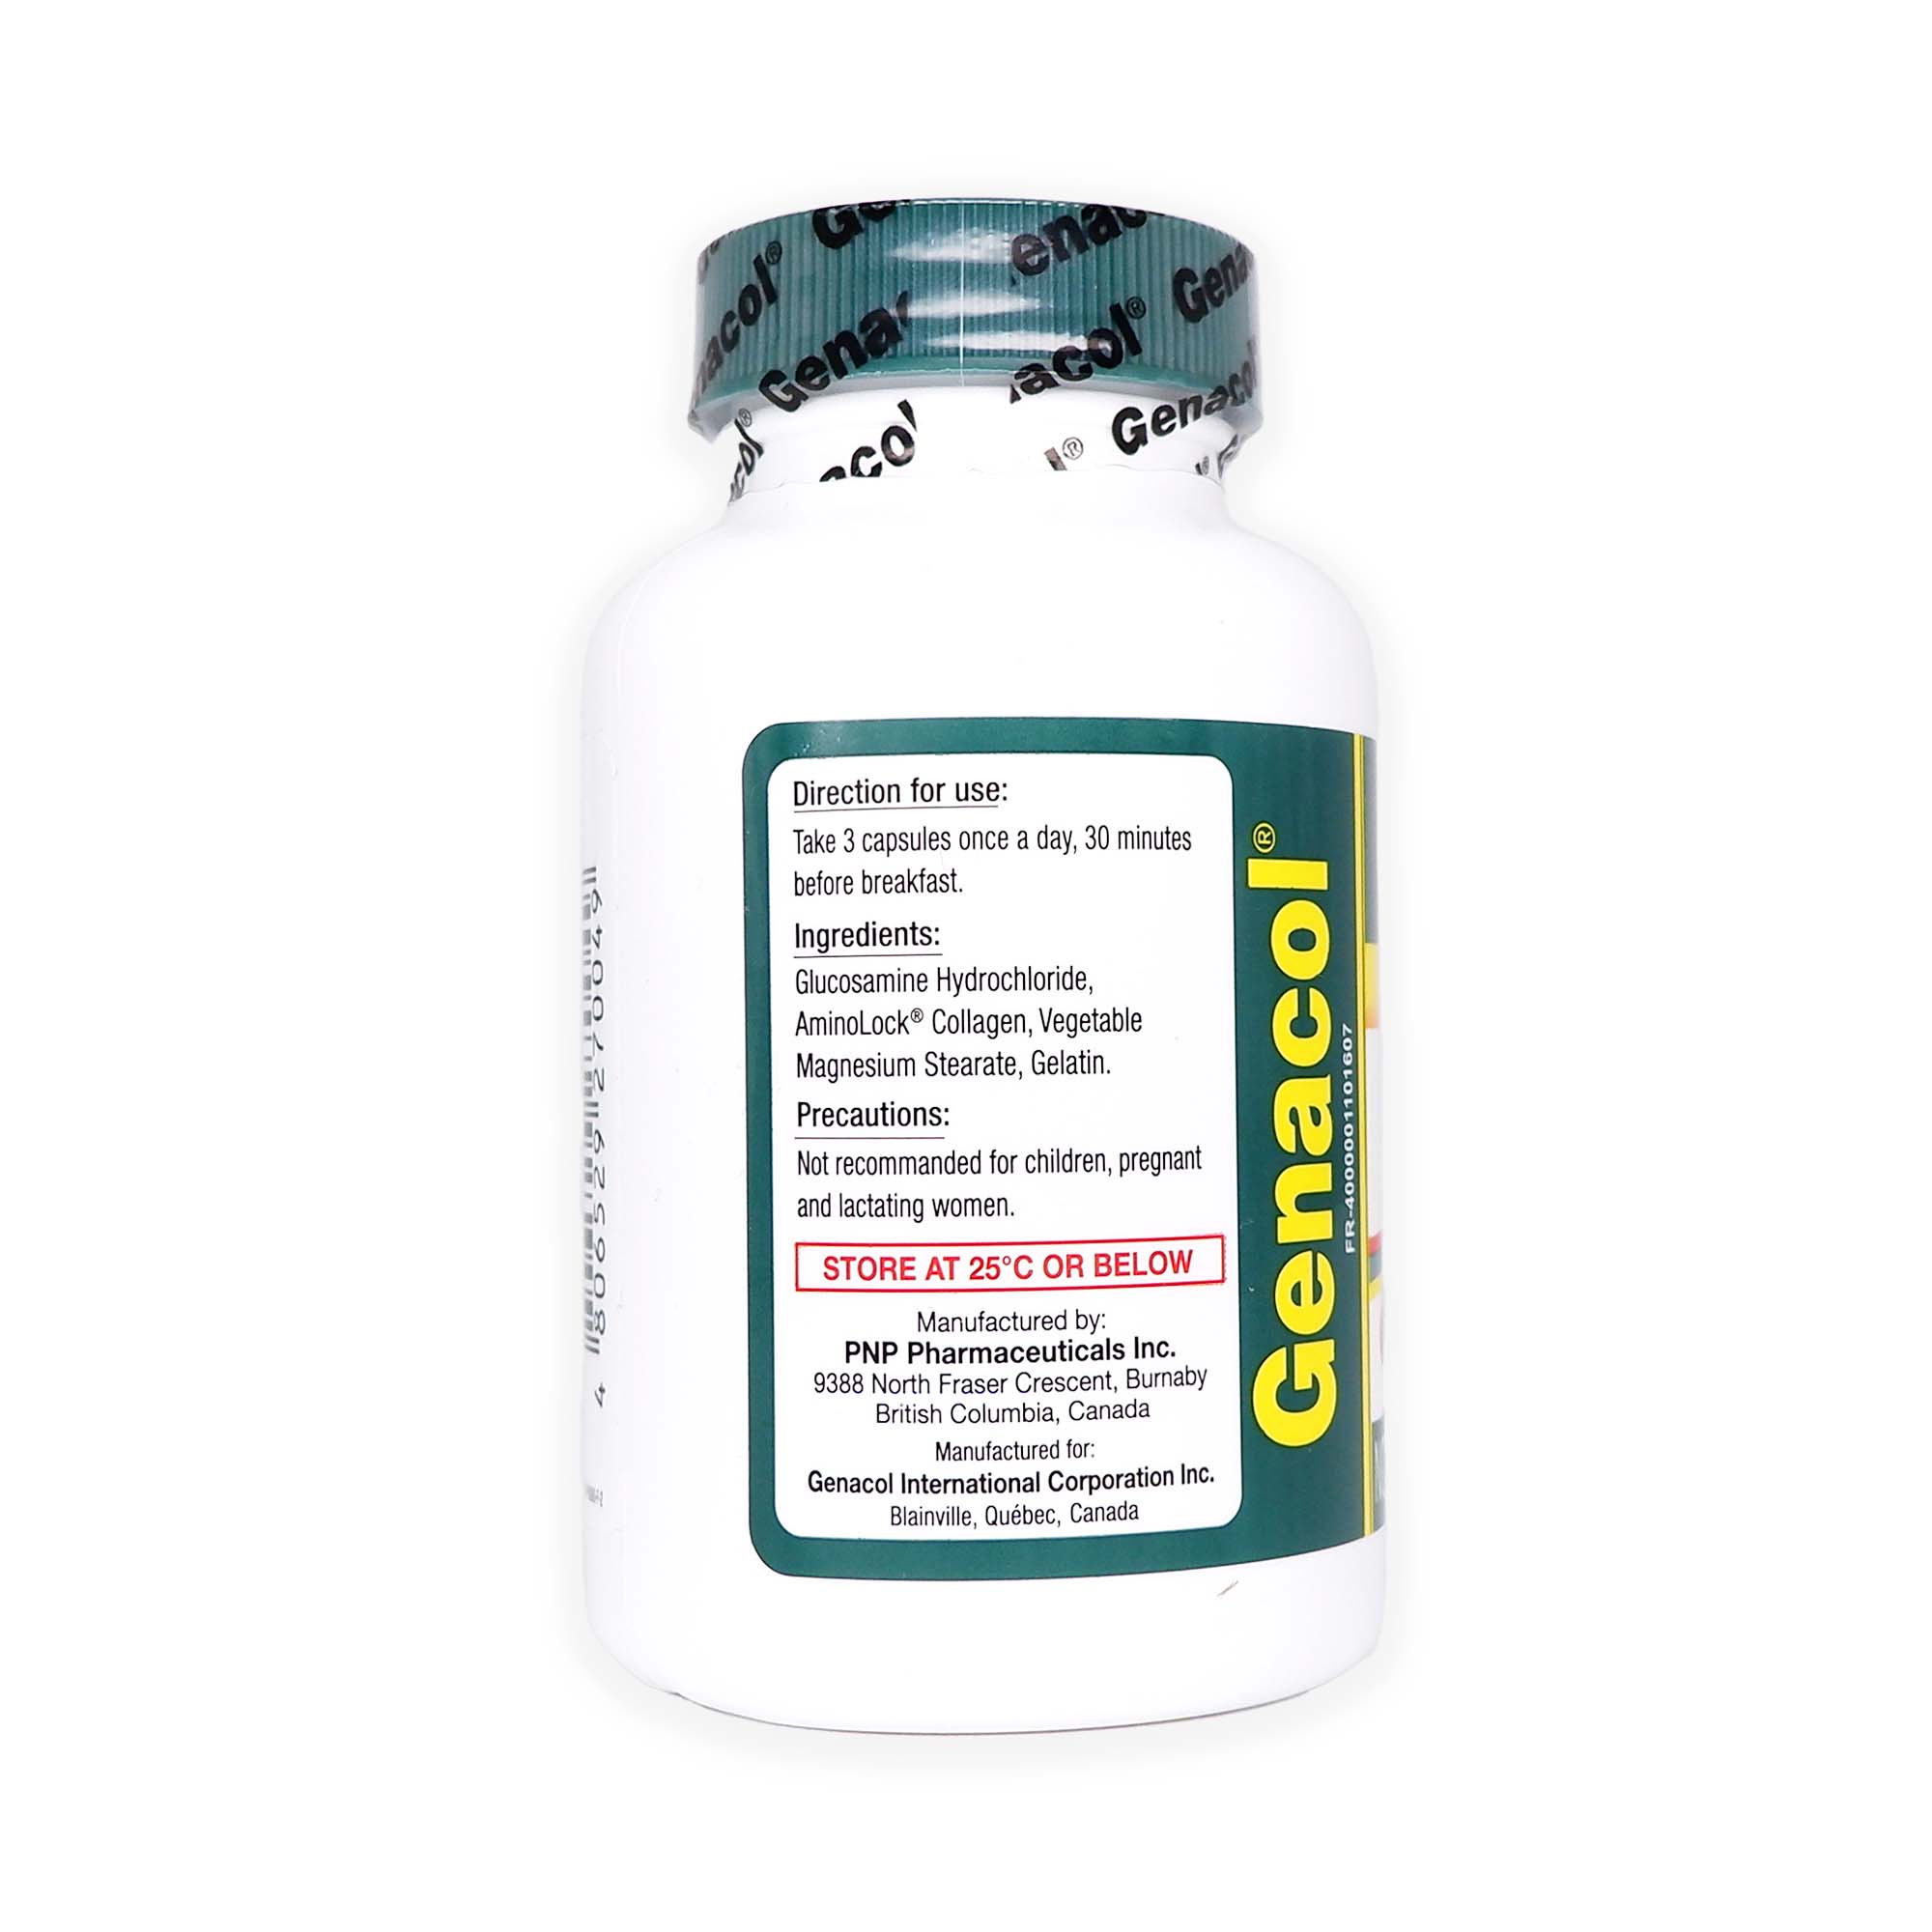 Genacol Plus AminoLock Collagen with Glucosamine 90 Capsules